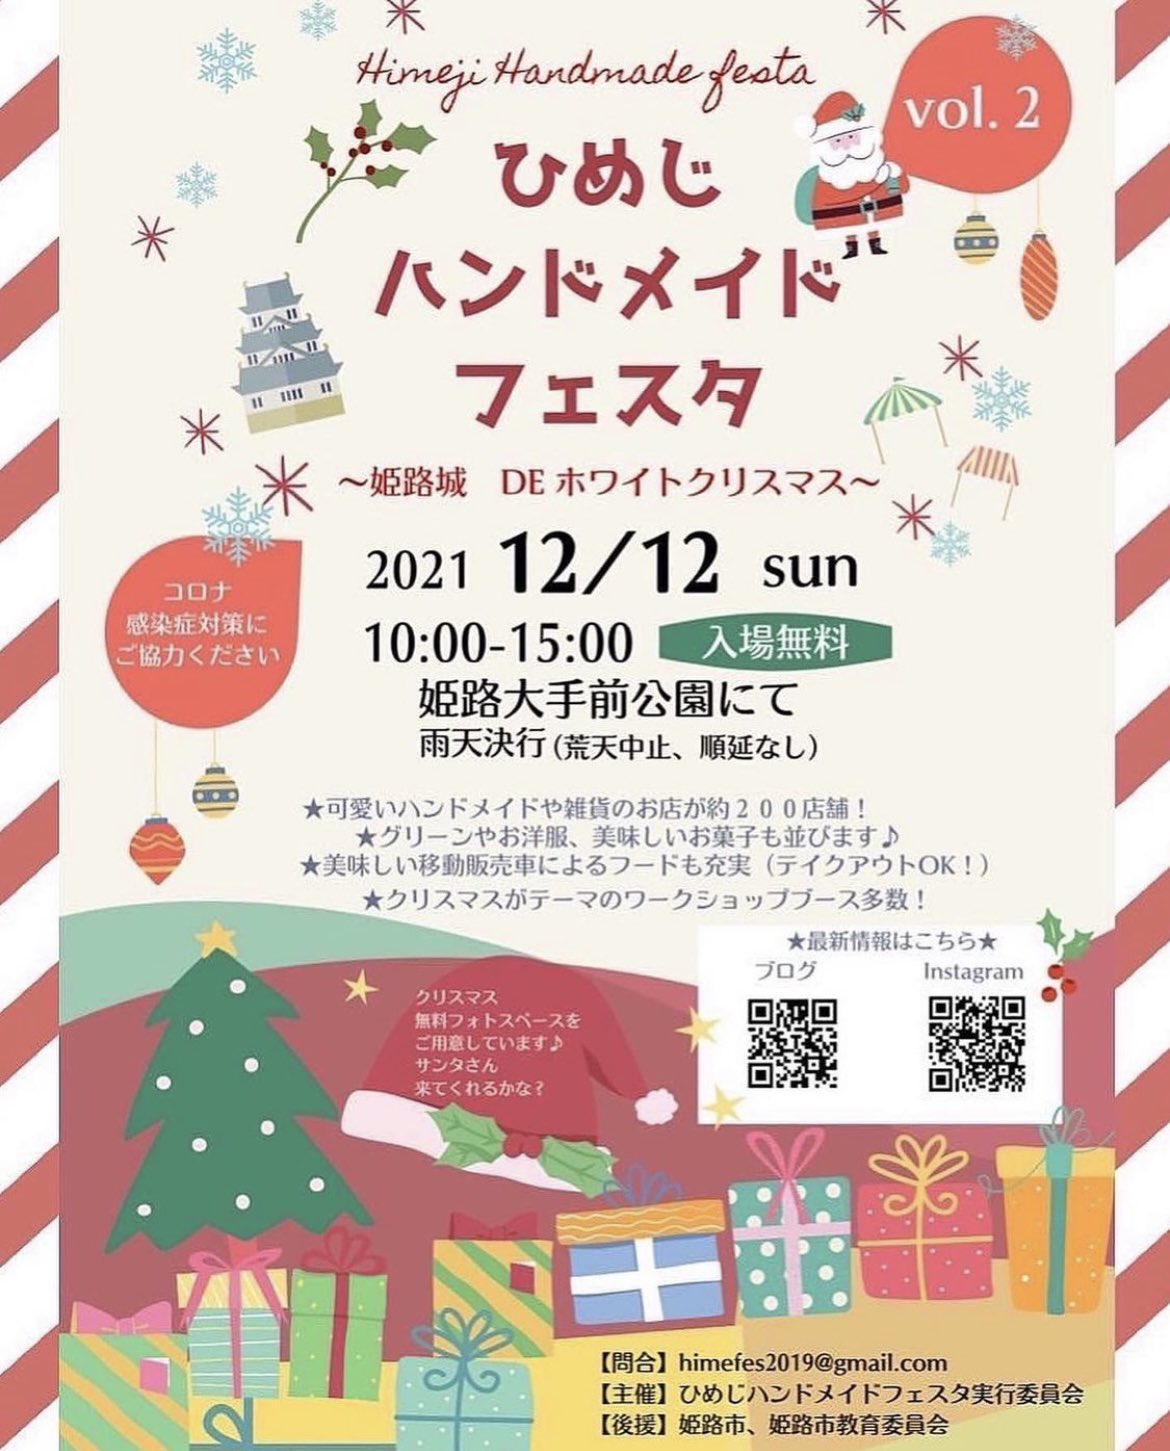 姫路市 21年12月12日 日 姫路市大手前公園で ひめじハンドメイドフェスタvol 2 姫路城deホワイトクリスマス が開催されます 号外net 姫路市